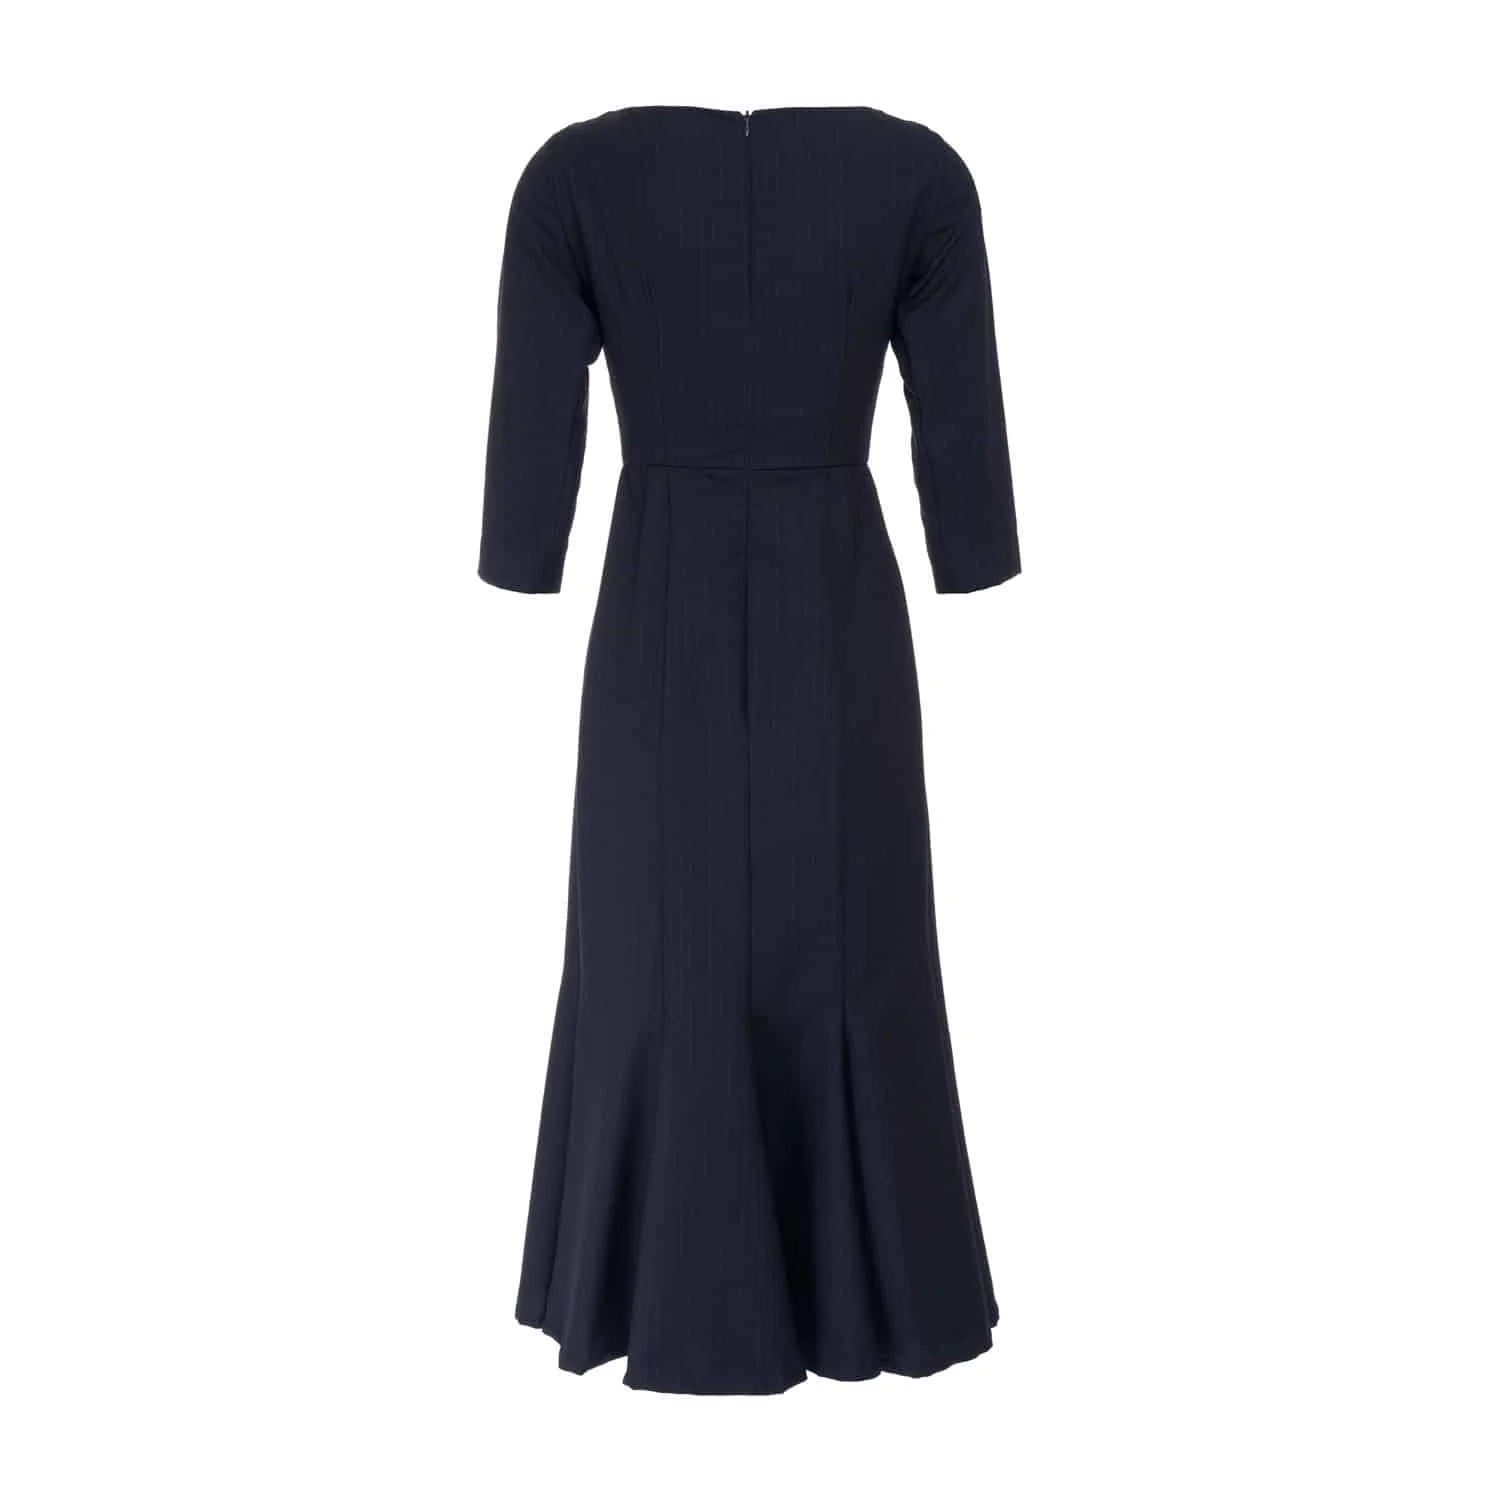 Pinstripe wool midi dress - Dress